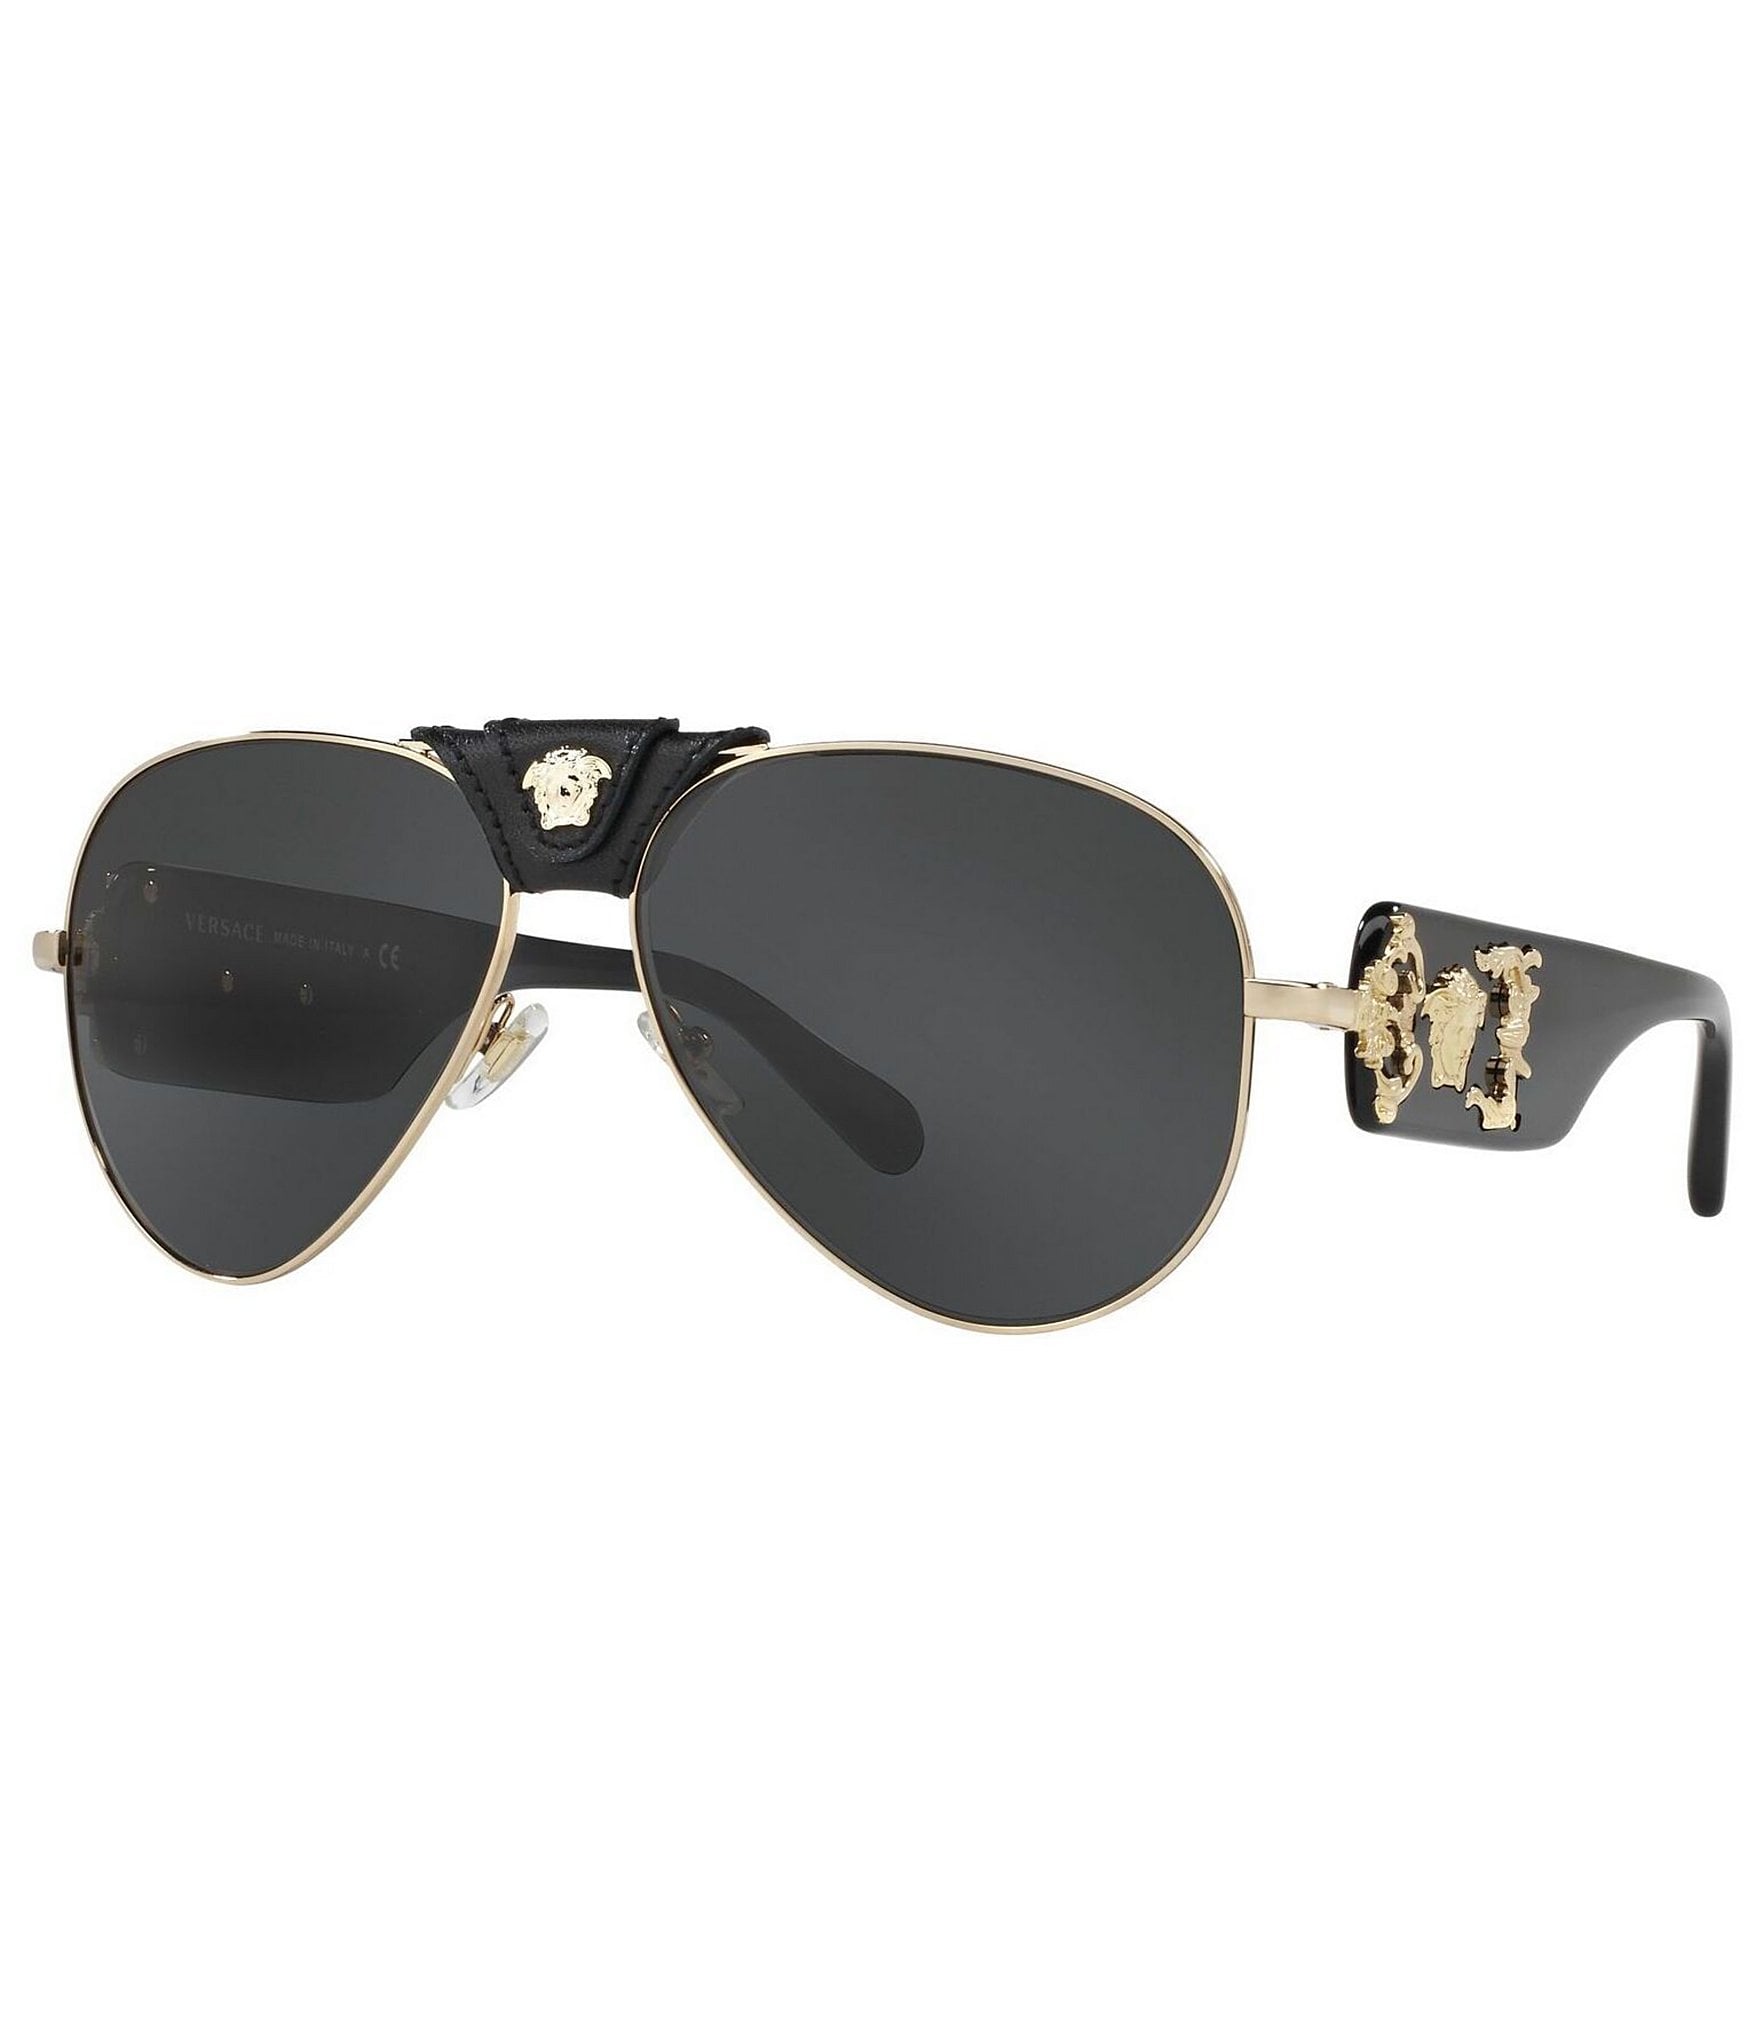 Buy online Aventus Aviator Sunglasses For Men & Women-black Golden